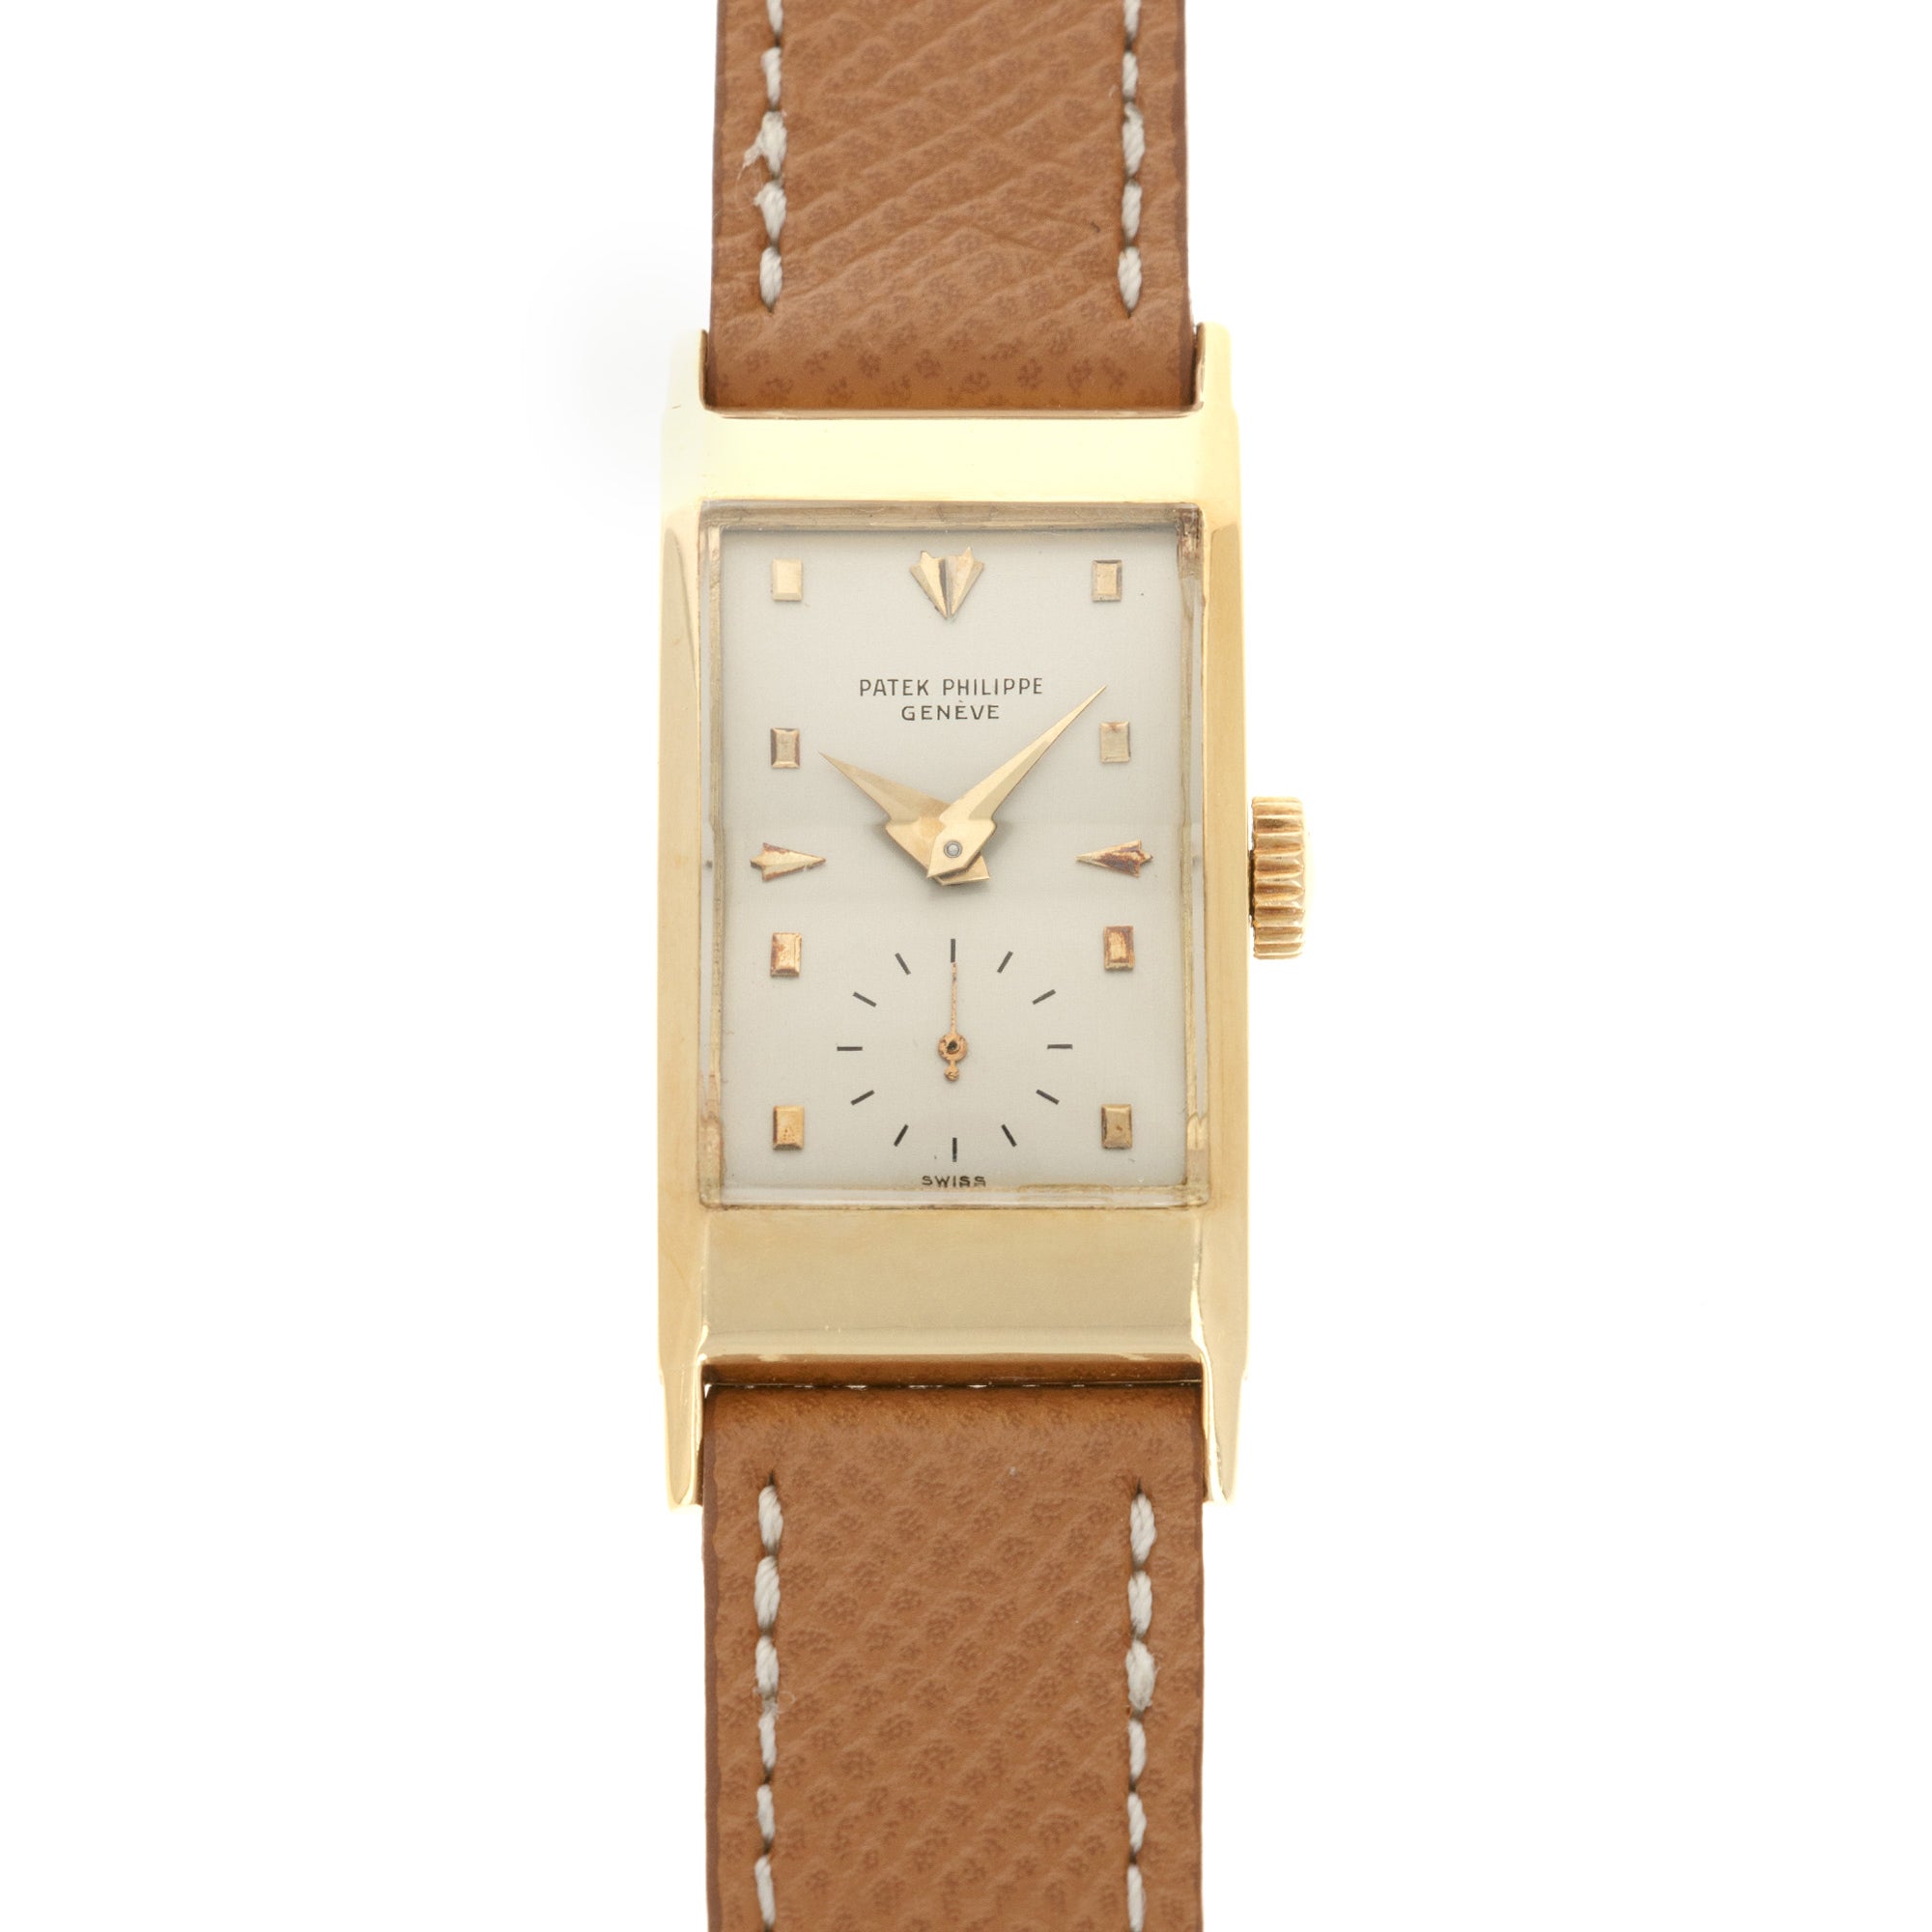 Patek Philippe - Patek Philippe Yellow Gold Rectangular Watch Ref. 425 - The Keystone Watches